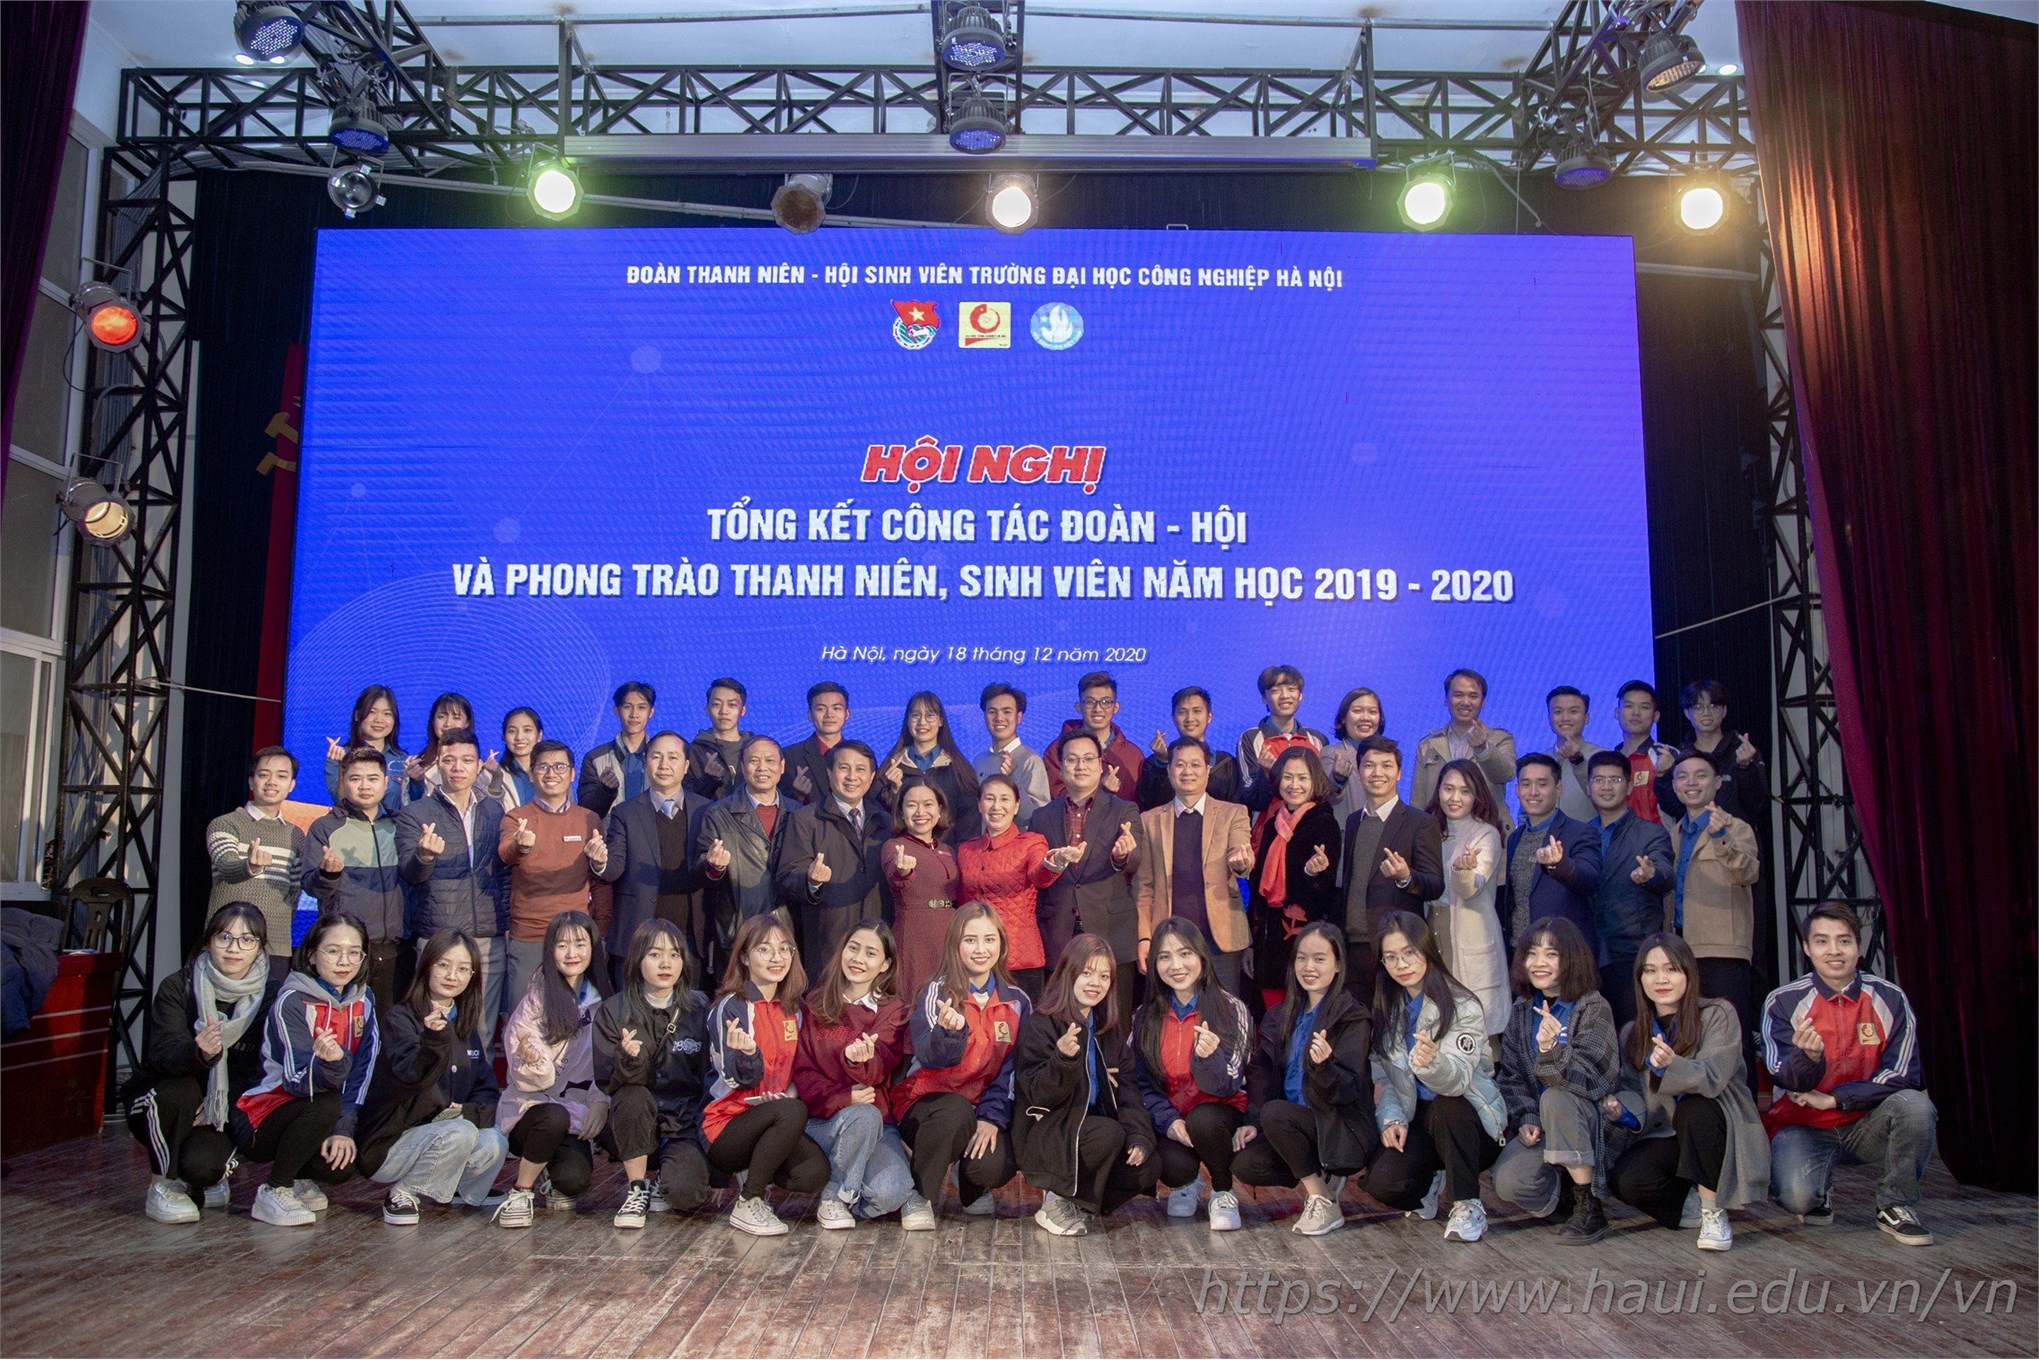 tổng kết công tác Đoàn Hội và phong trào thanh niên sinh viên năm học 2019 - 2020